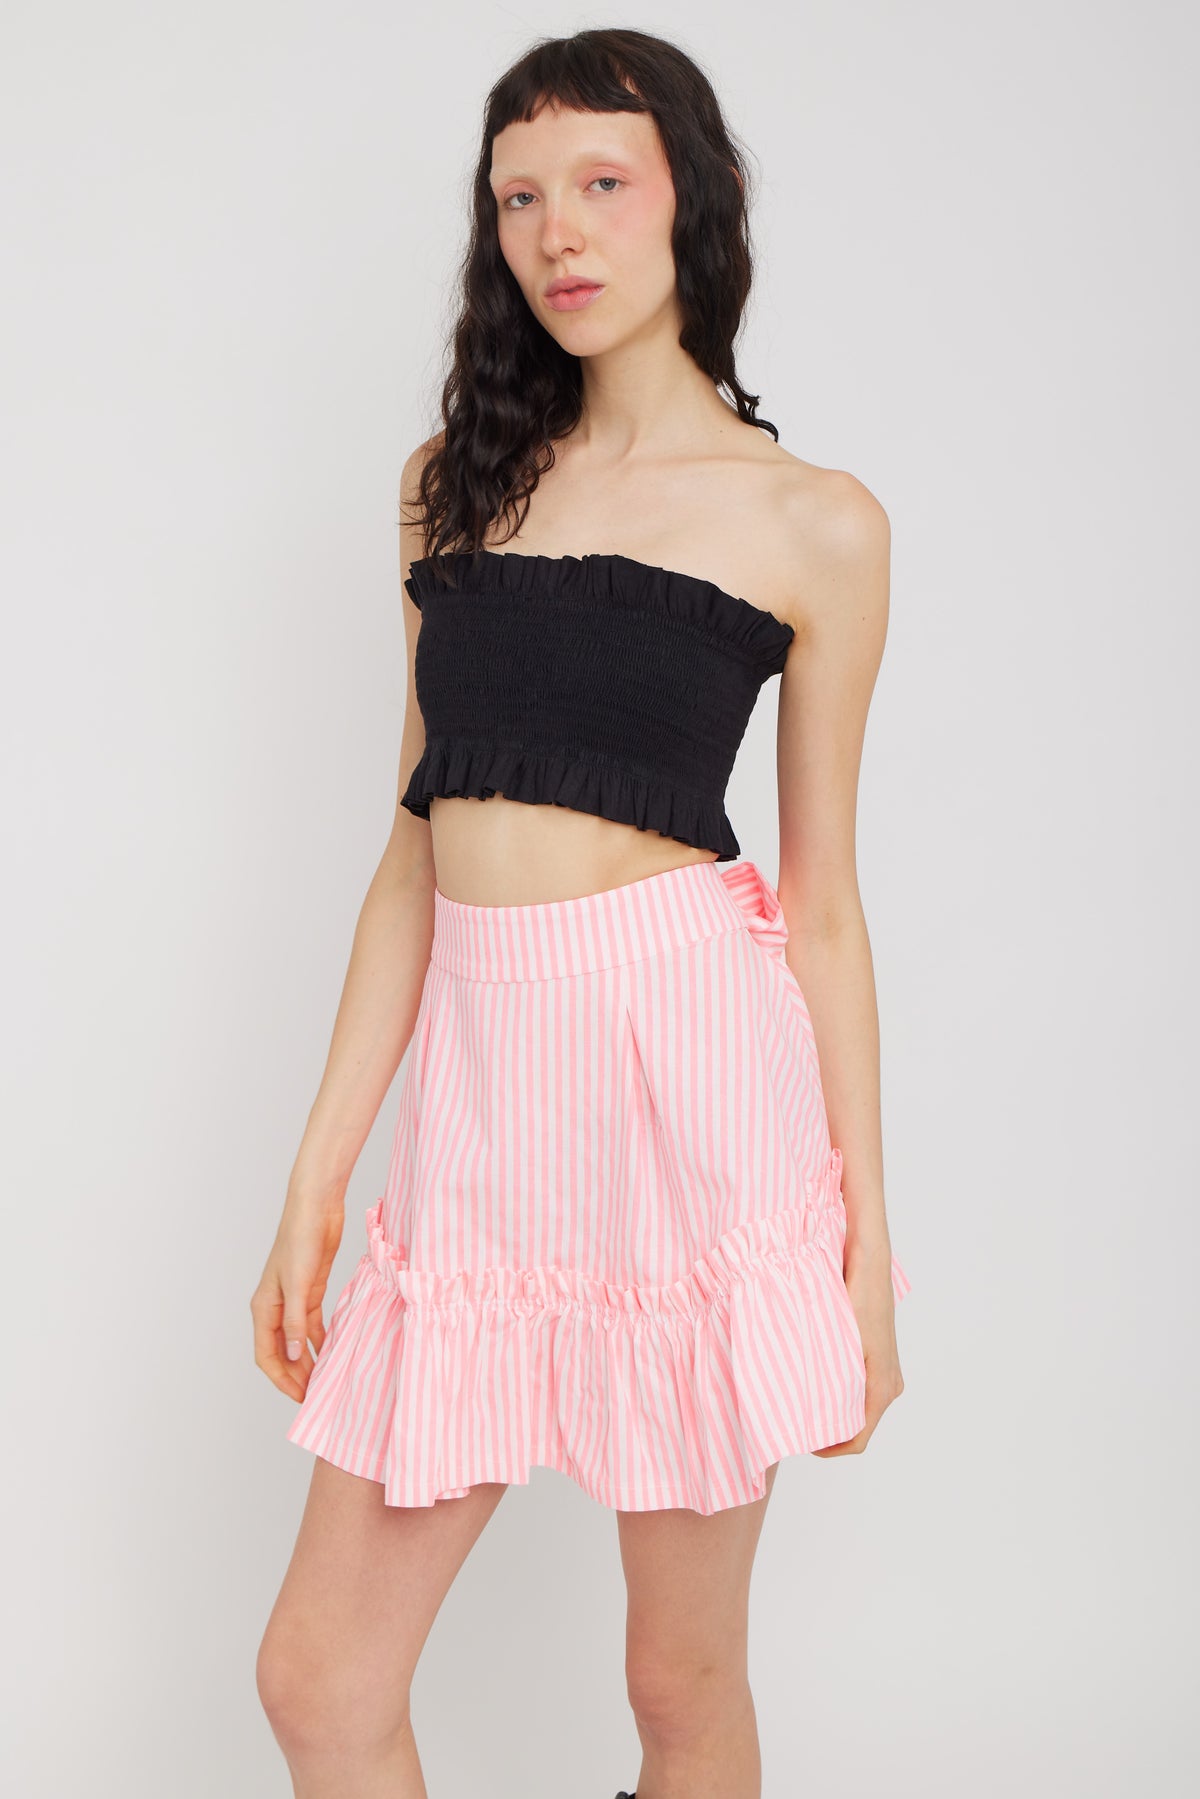 Quinoa Skirt Pink Candy Stripe